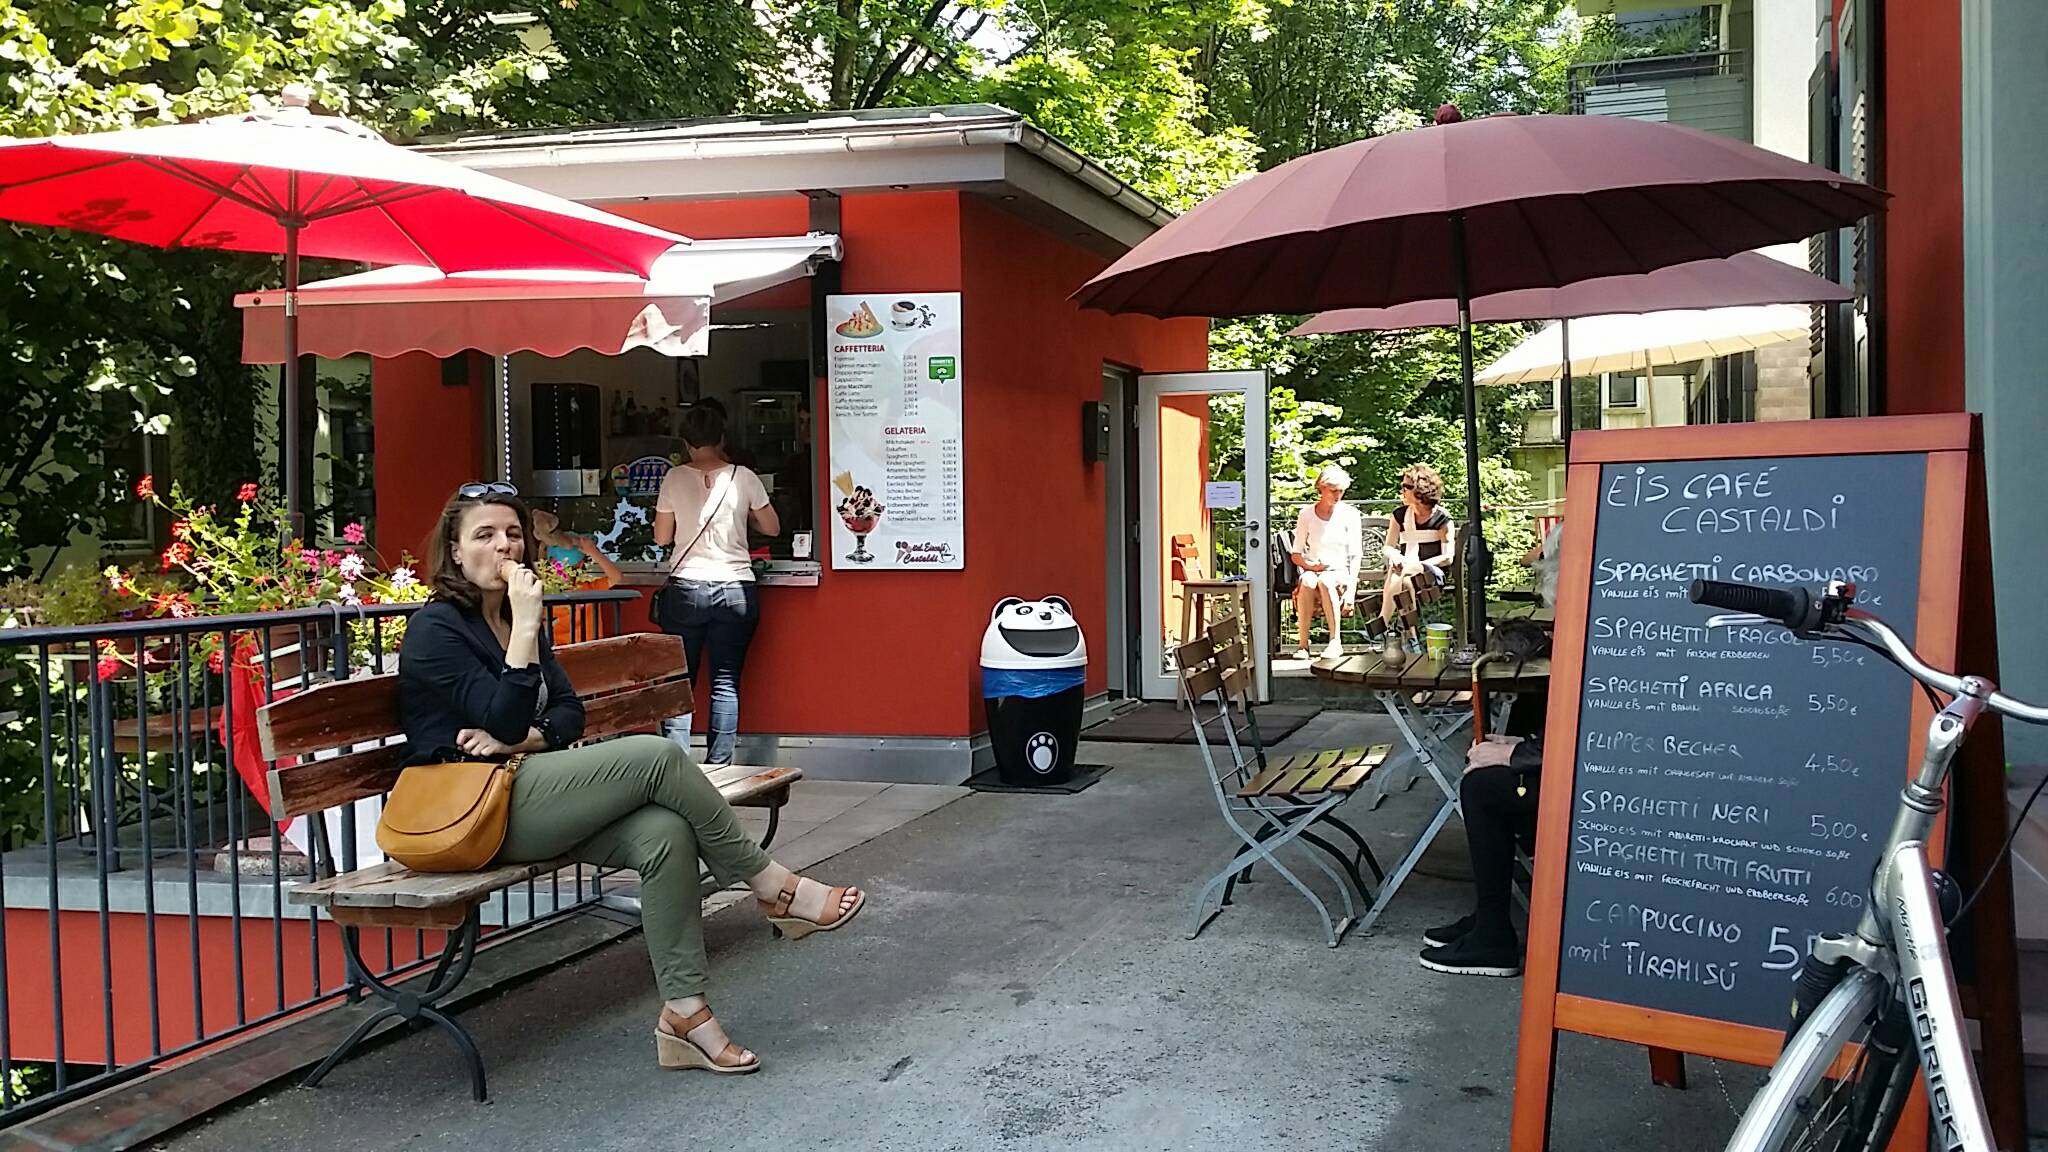 Bild 1 Eiscafe Castaldi Italienisches Eiscafé in Freiburg im Breisgau